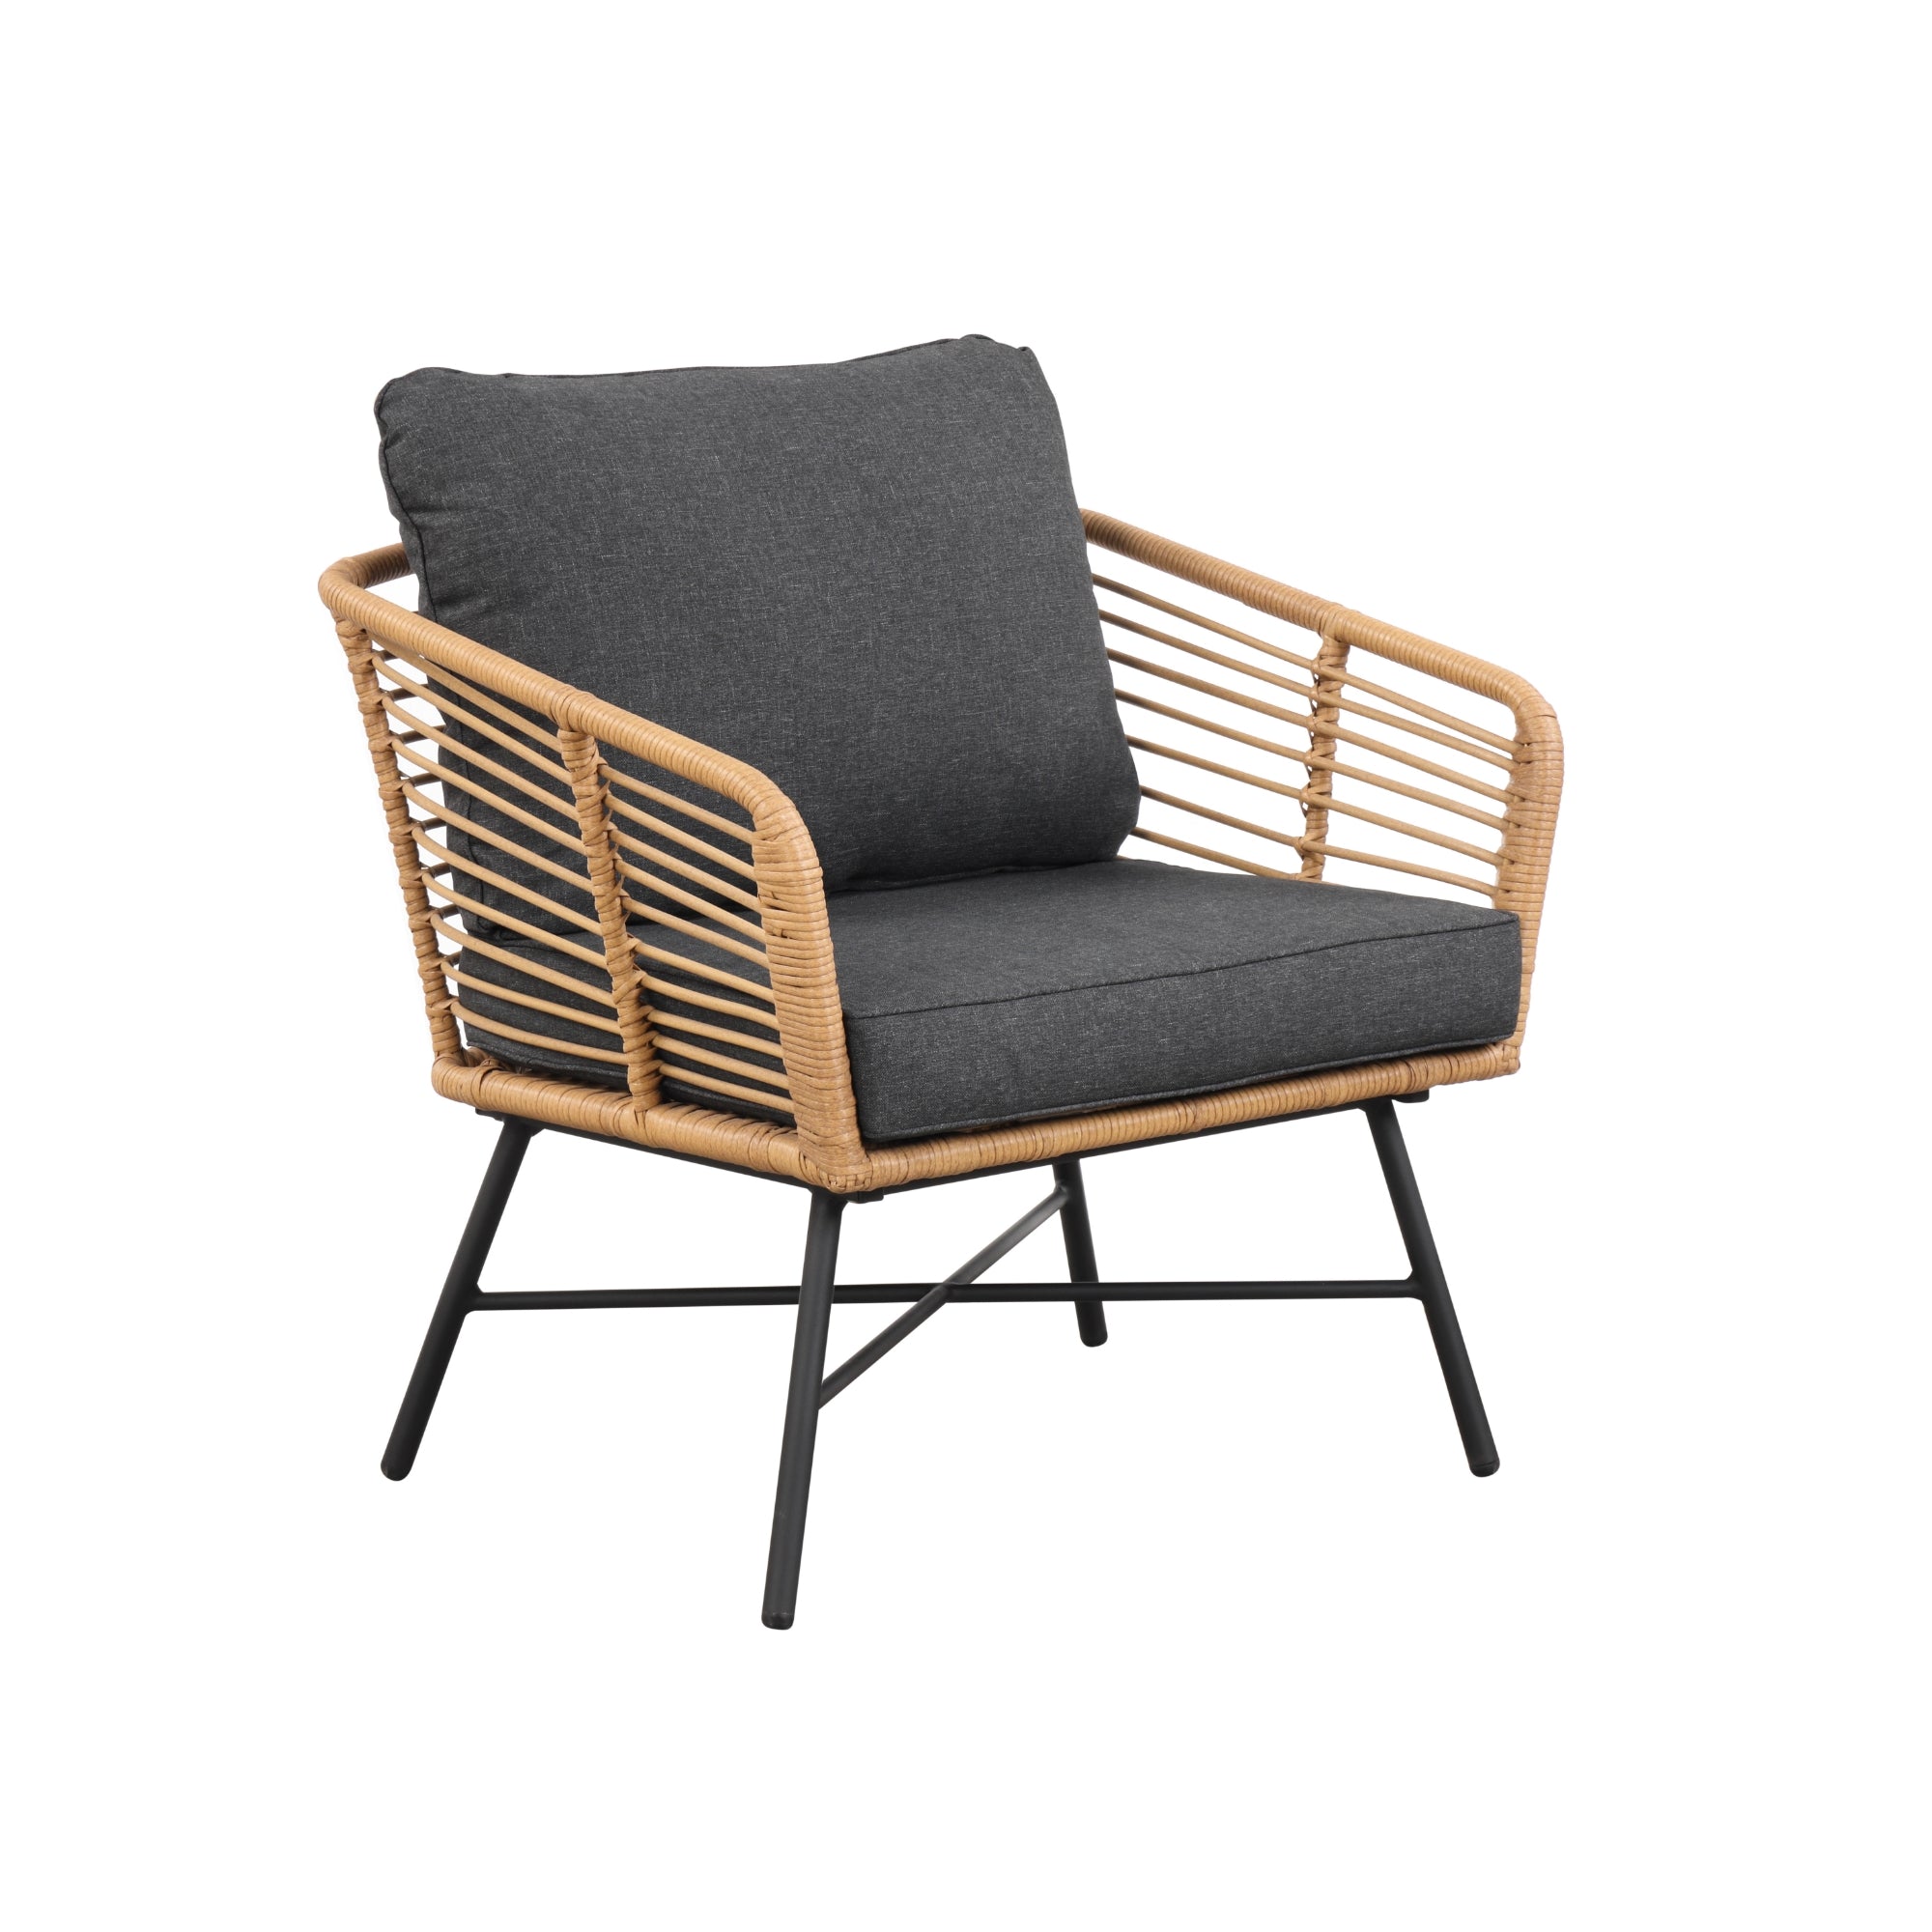 Set of 4 Outdoor Wicker Chairs Dark Gray